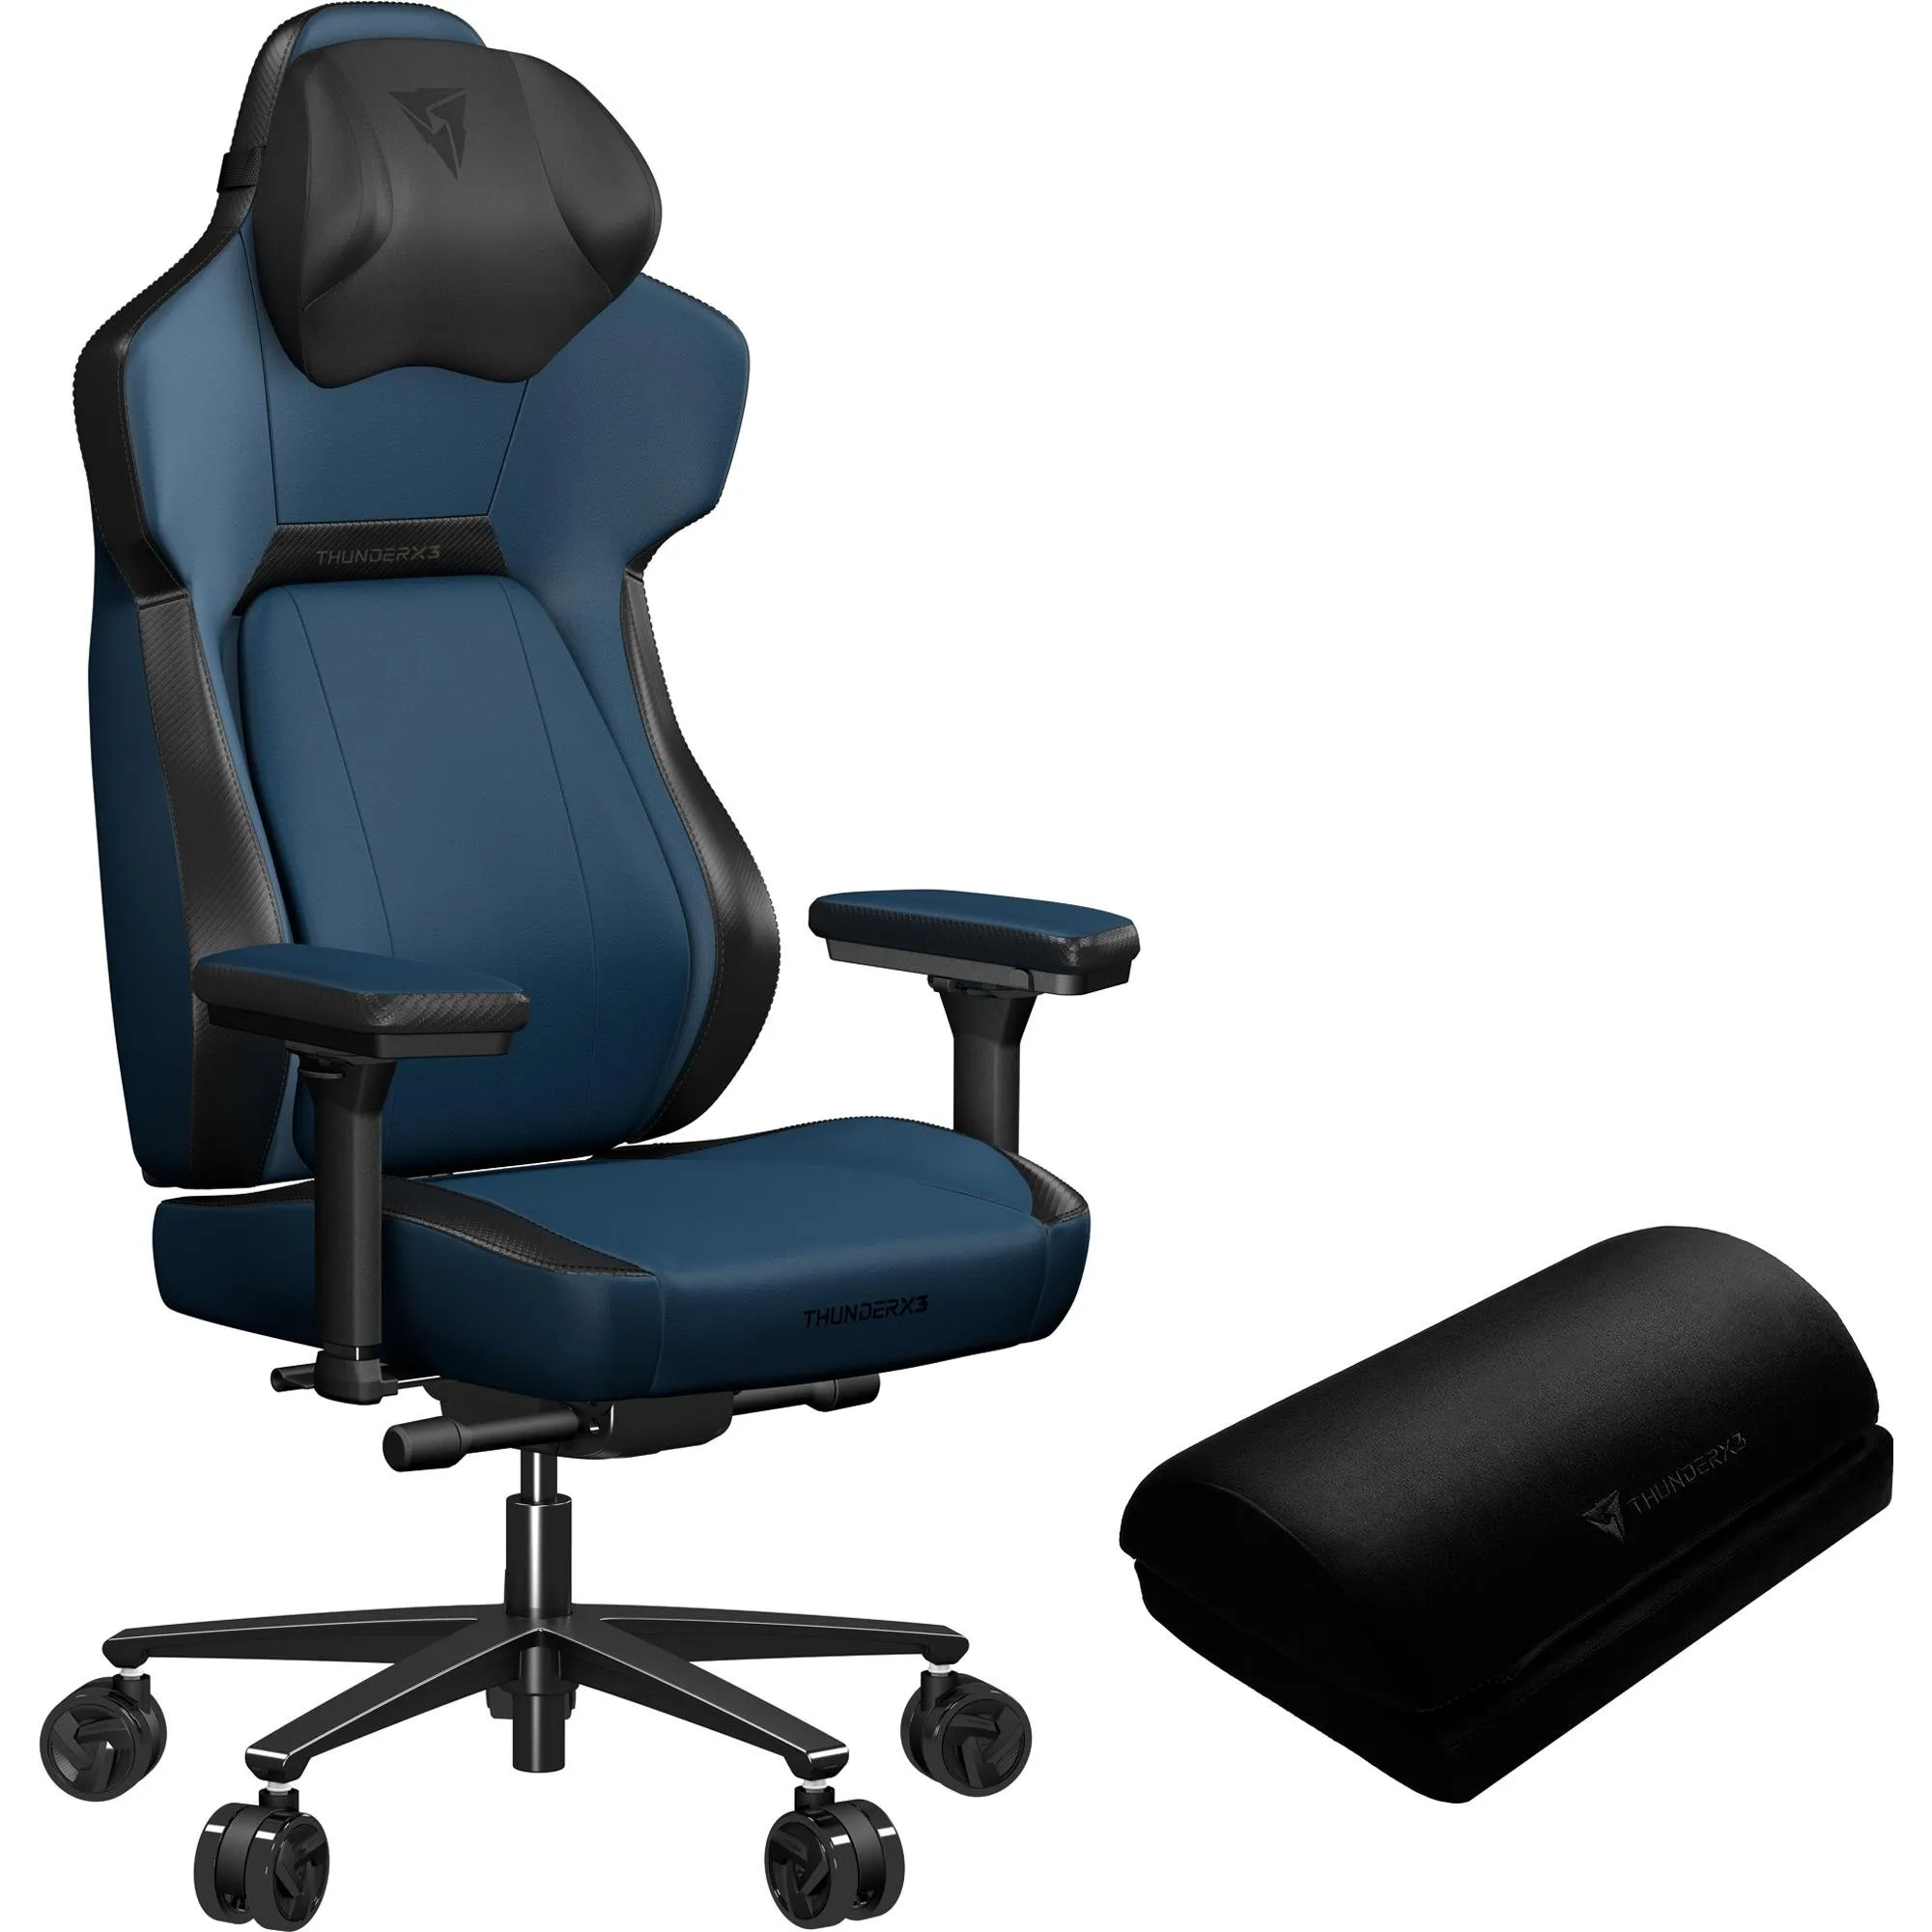 Cadeira Gamer ThunderX3 CORE Modern Azul por 3.548,99 à vista no boleto/pix ou parcele em até 12x sem juros. Compre na loja Mundomax!